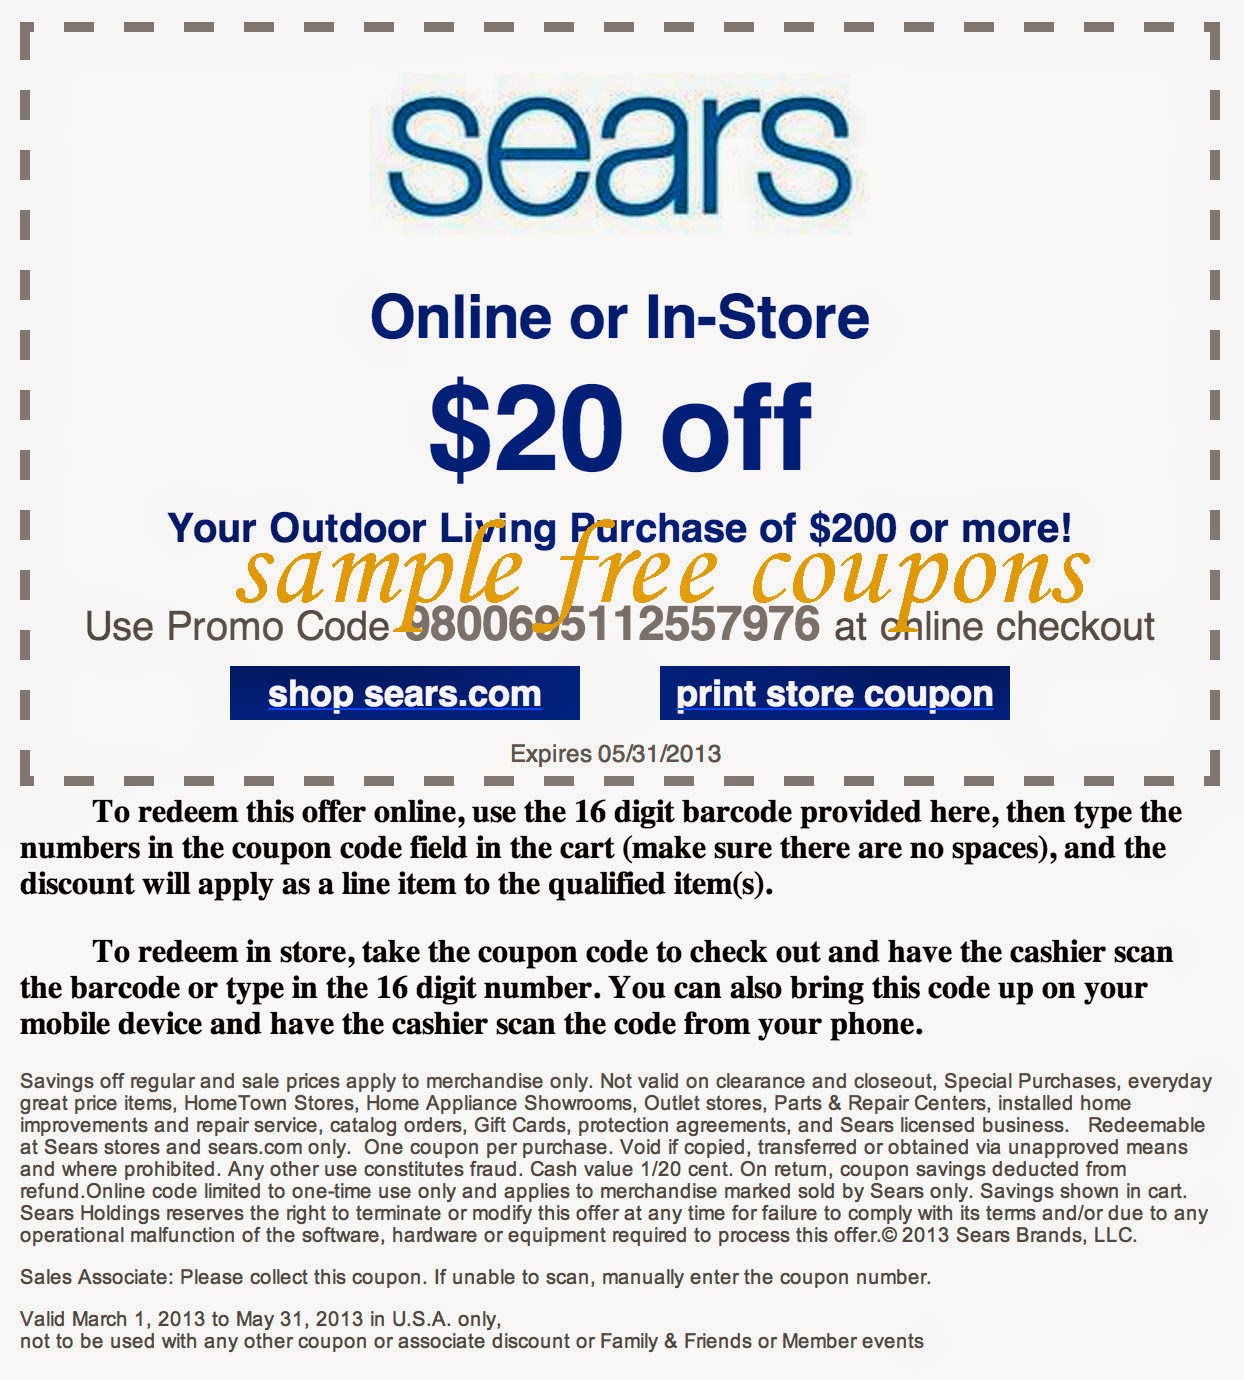 sears-coupons-may-2014